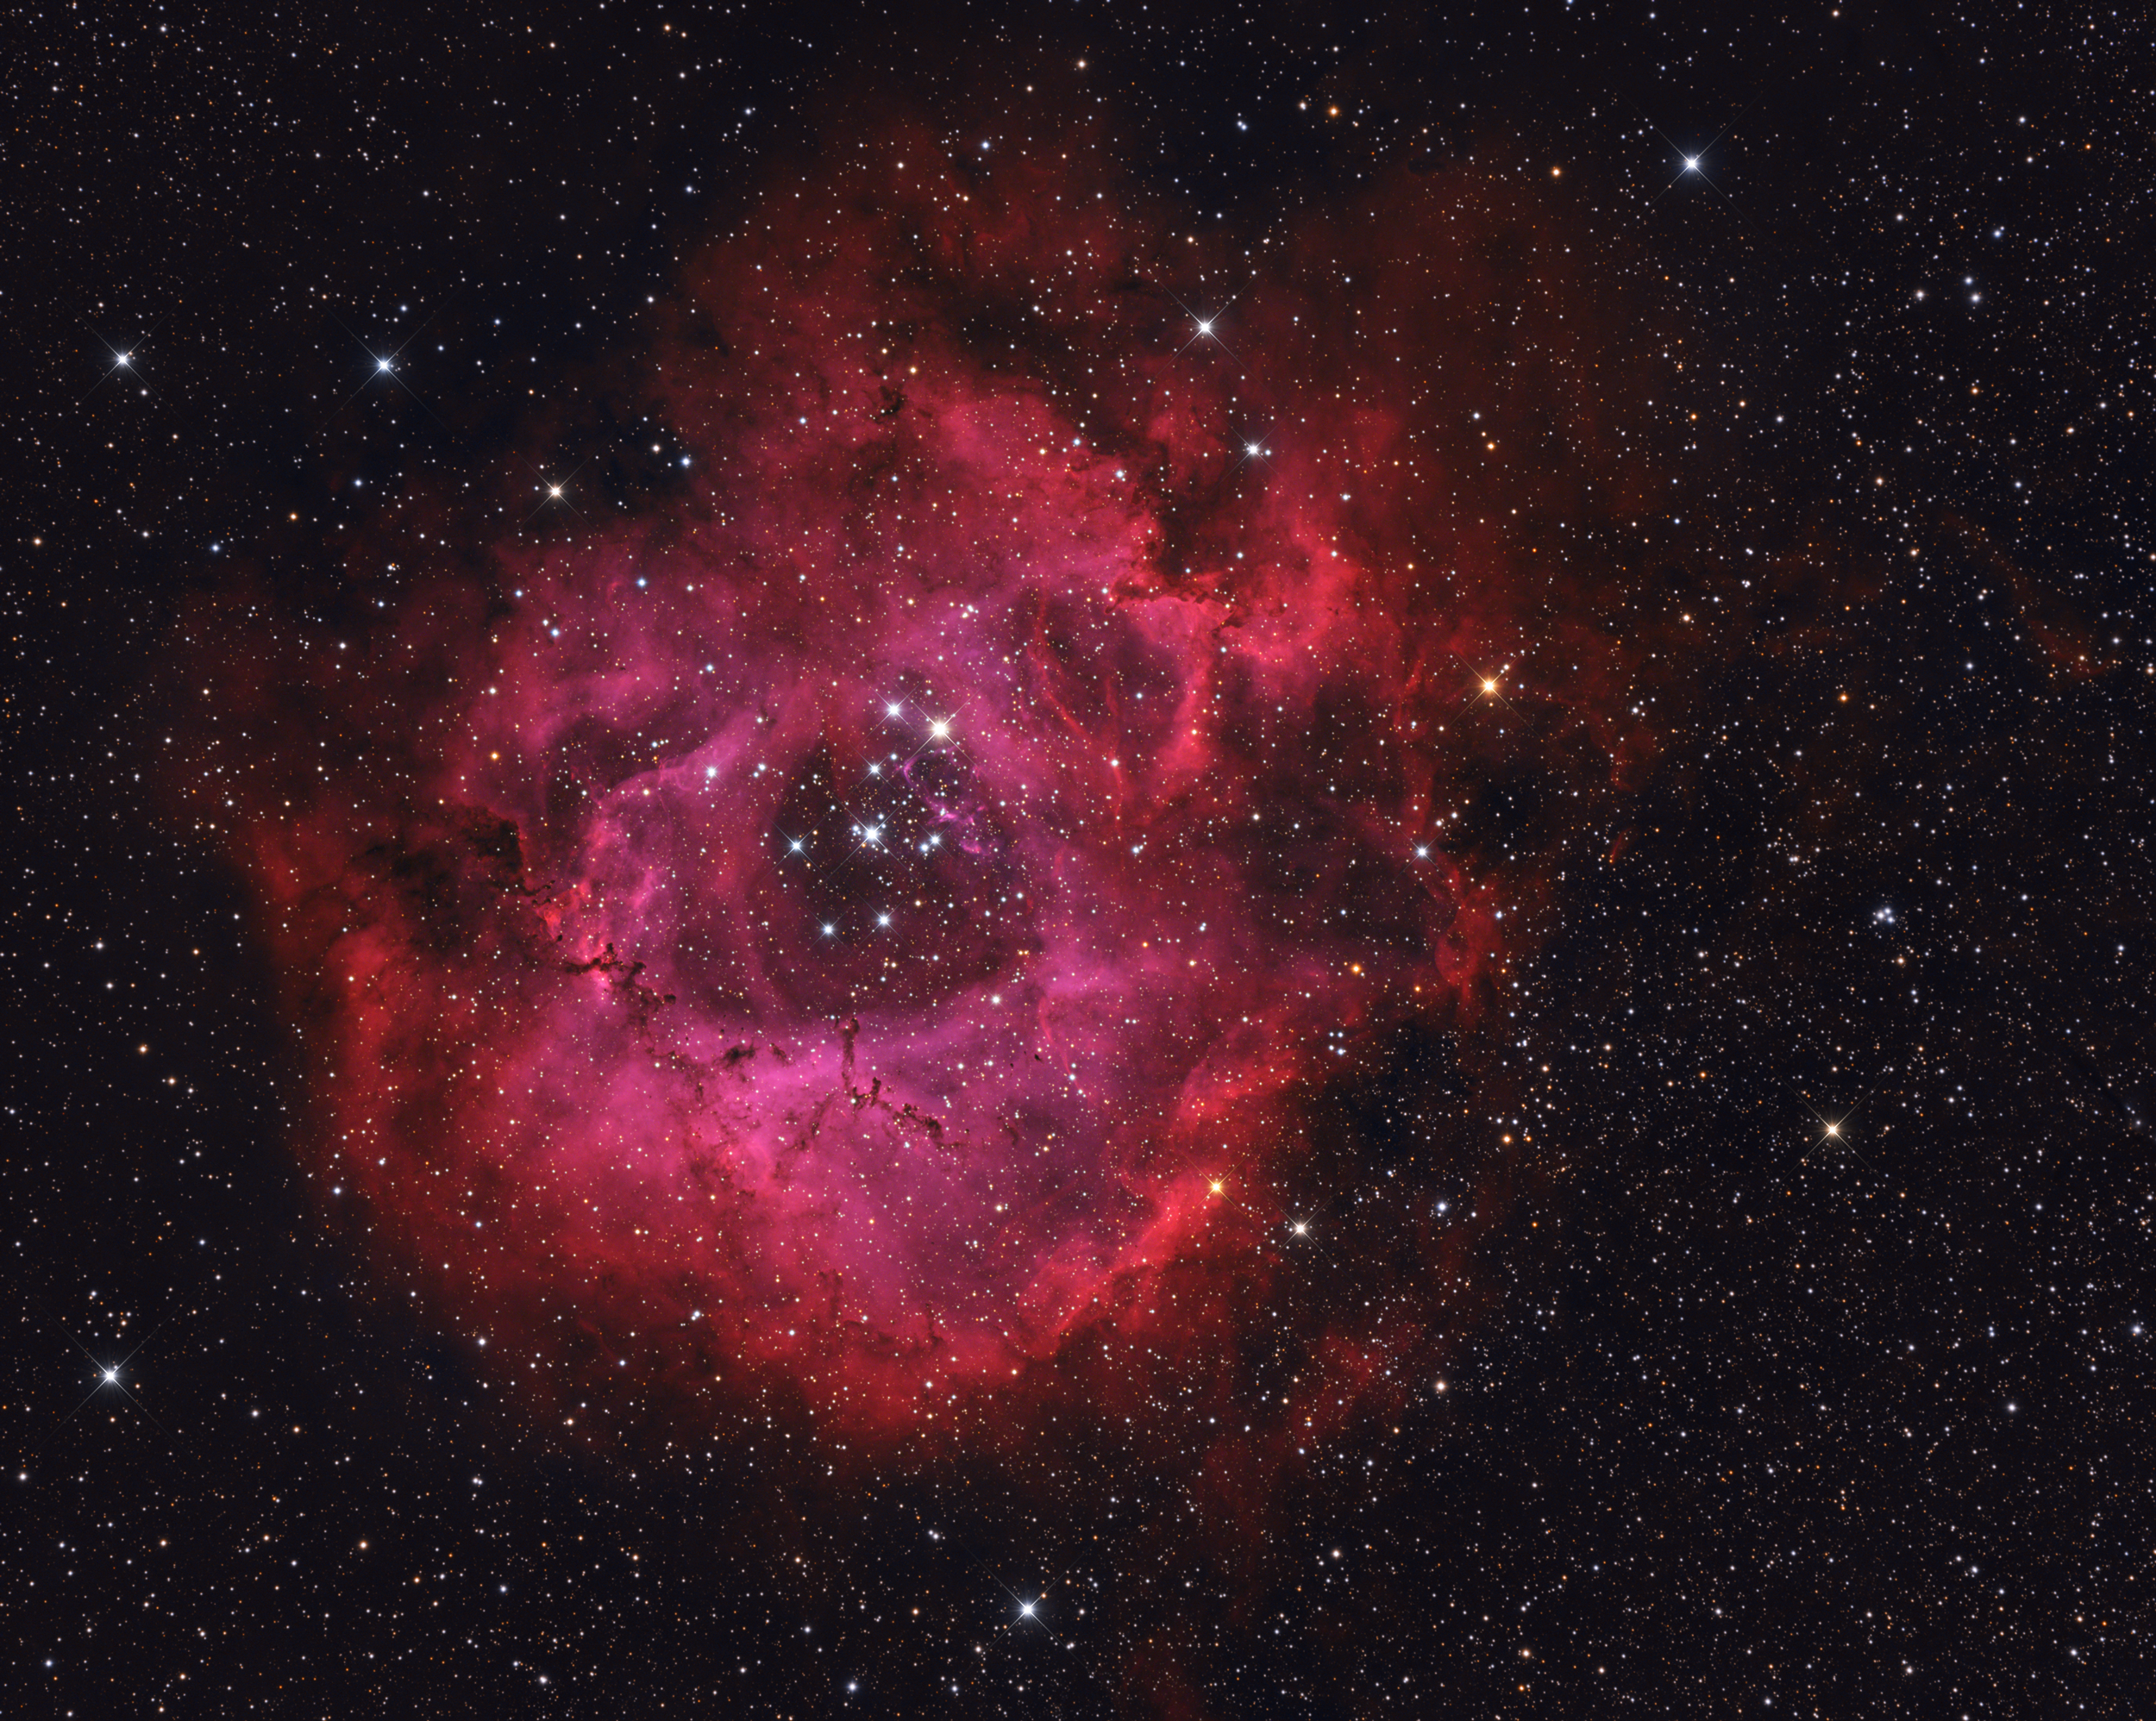 NGC 2244